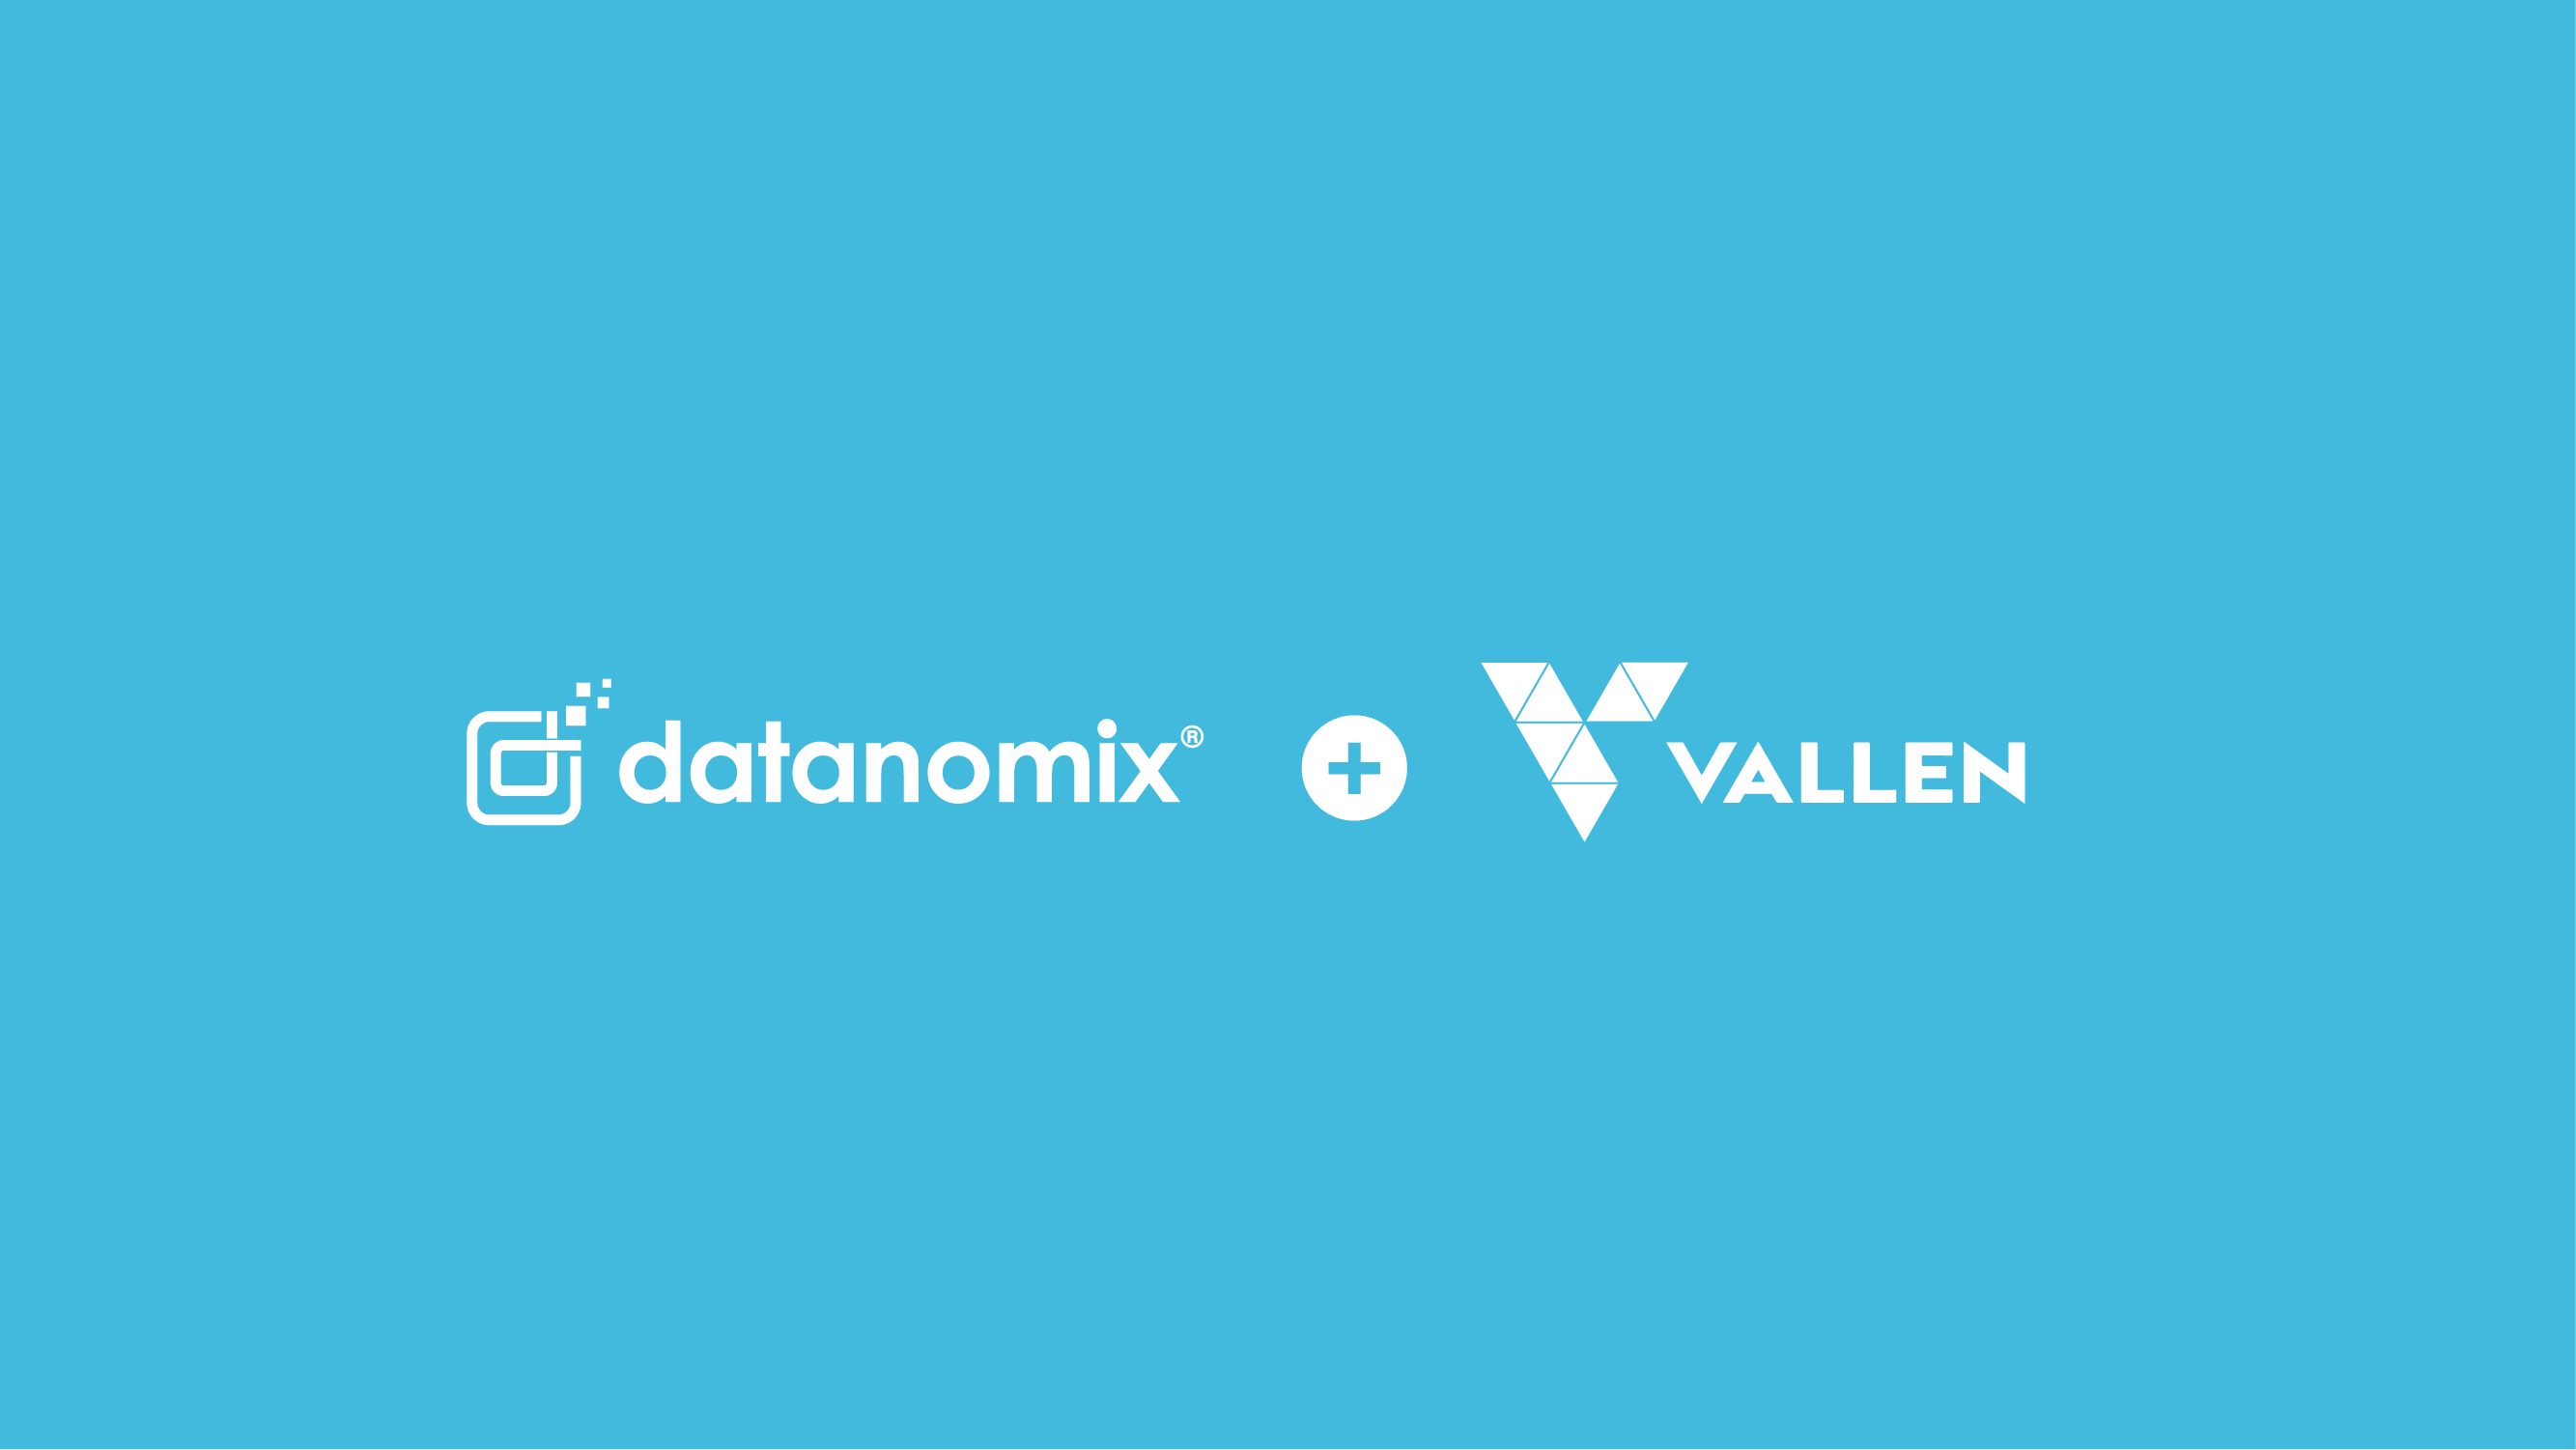 Datanomix + Vallen